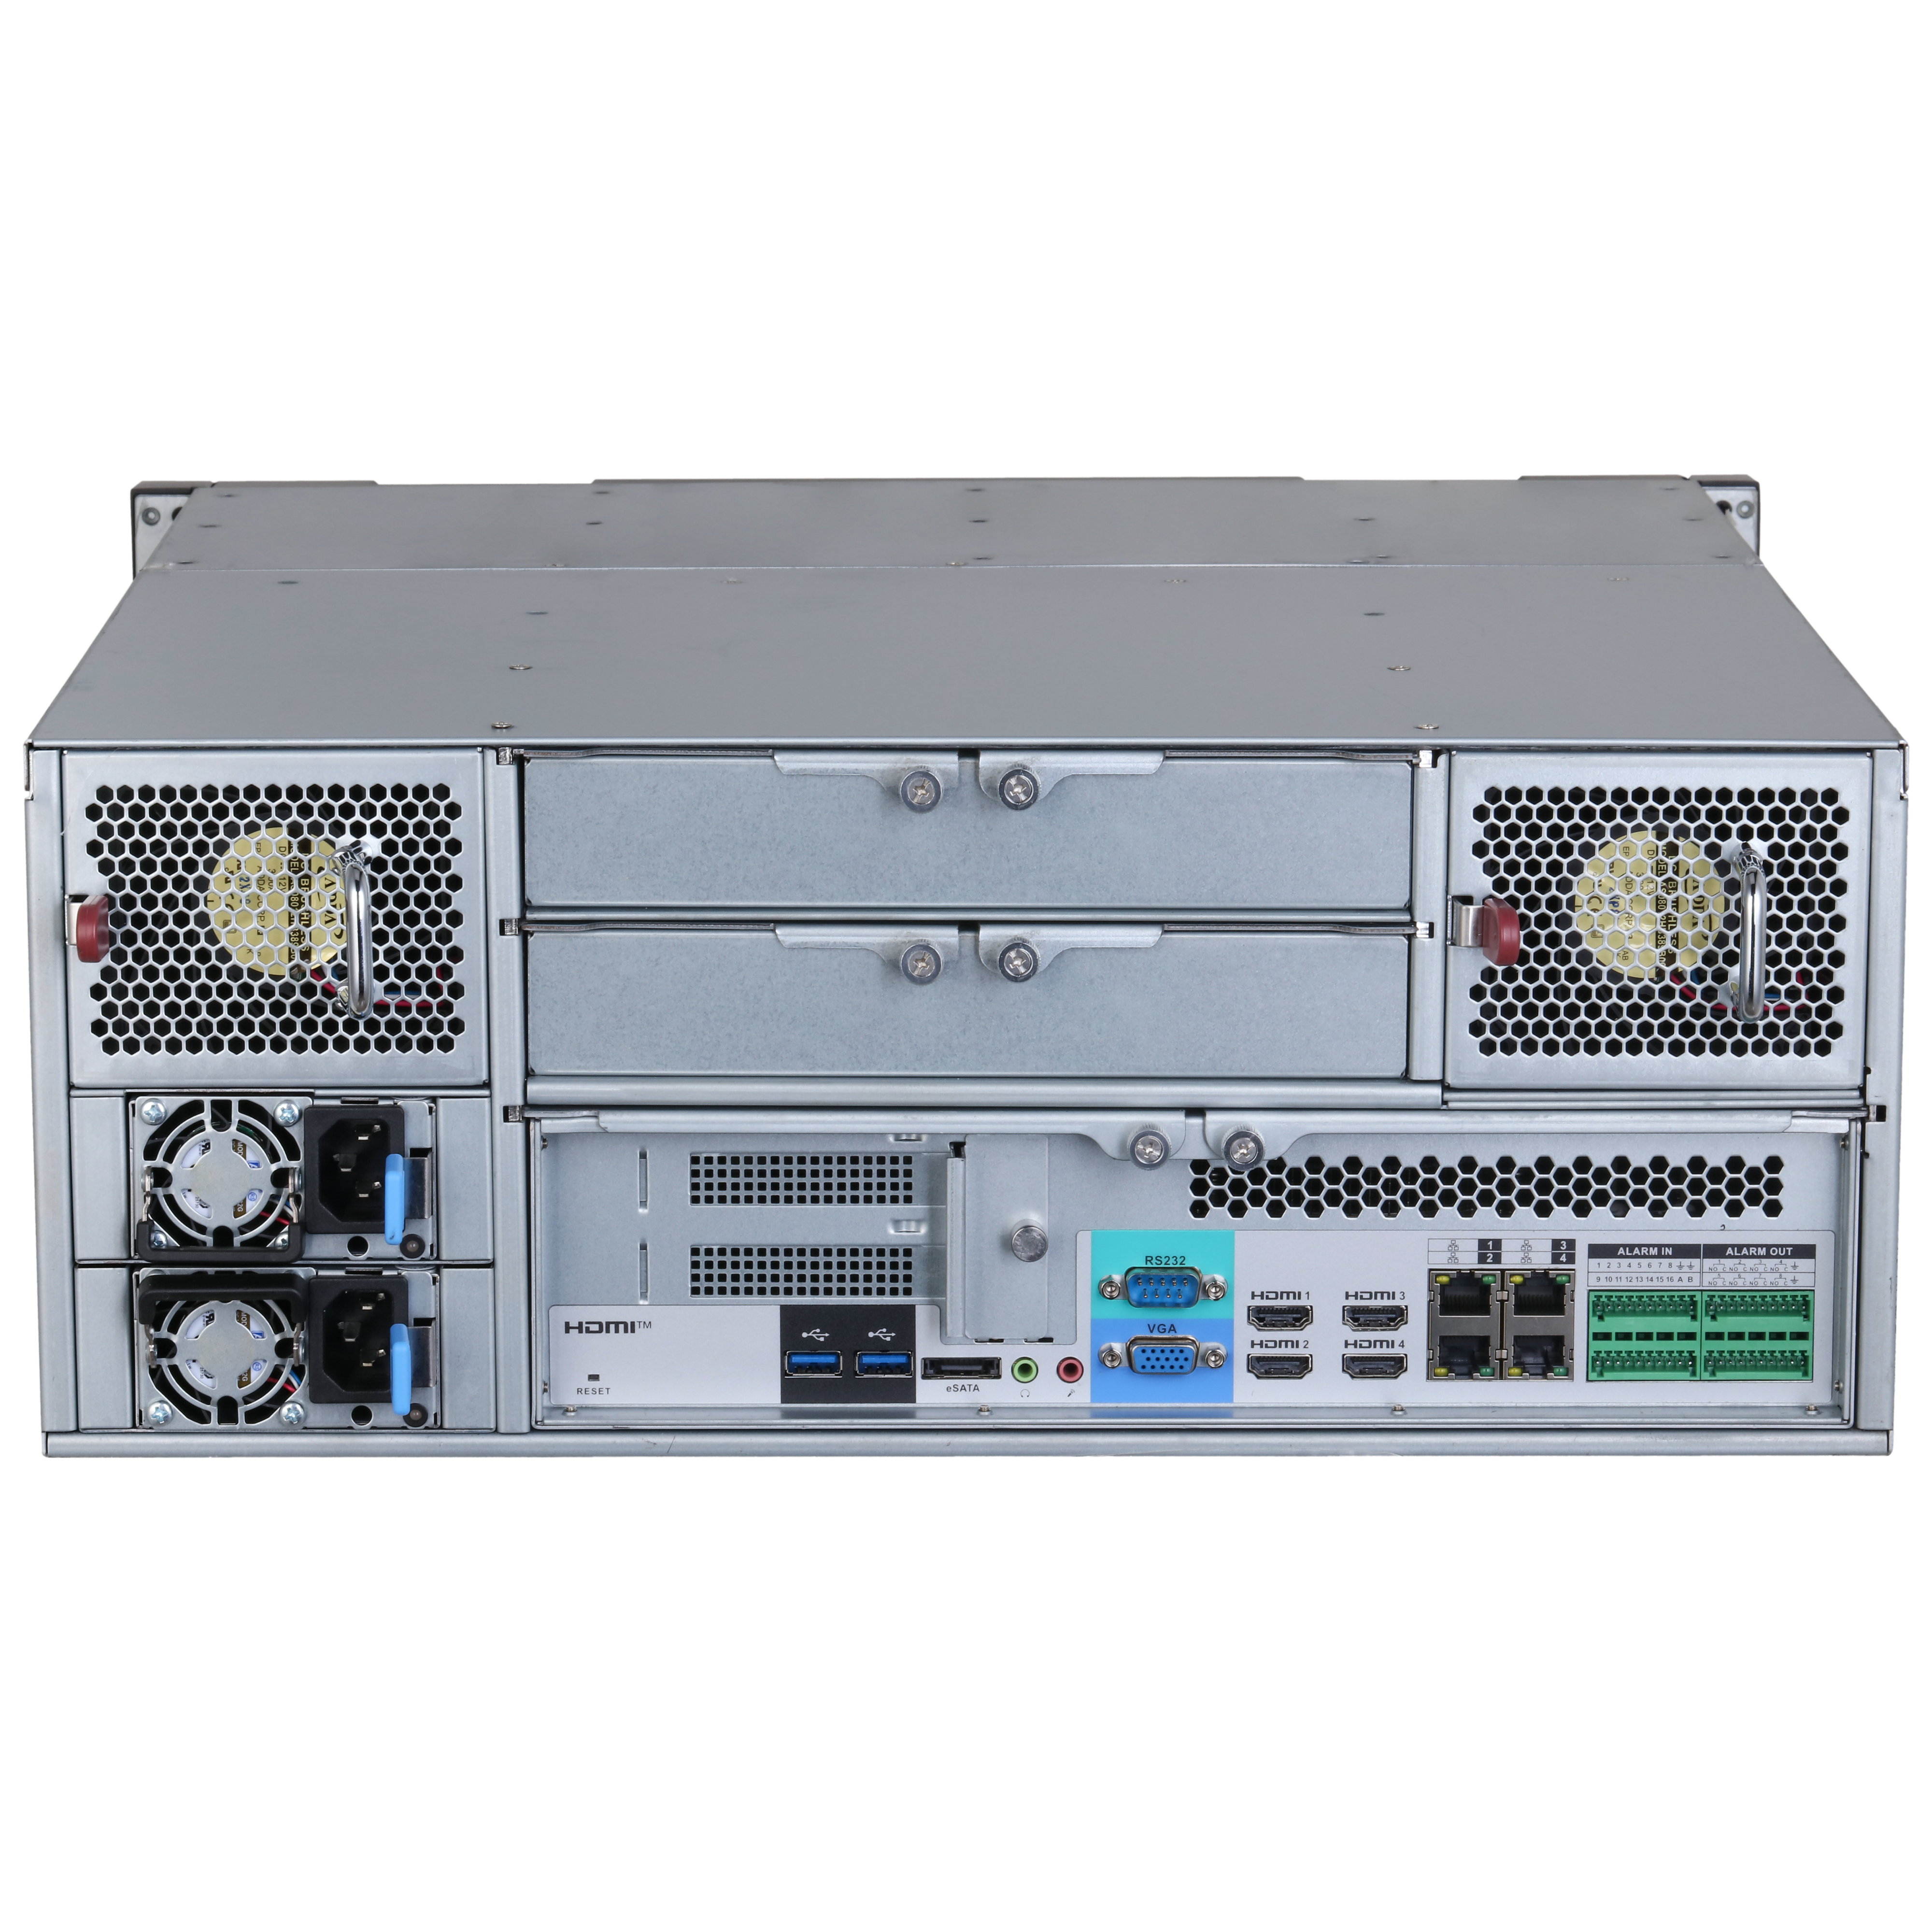 DAHUA IVSS7124DR 256CH 4U Intelligent Video Surveillance Server